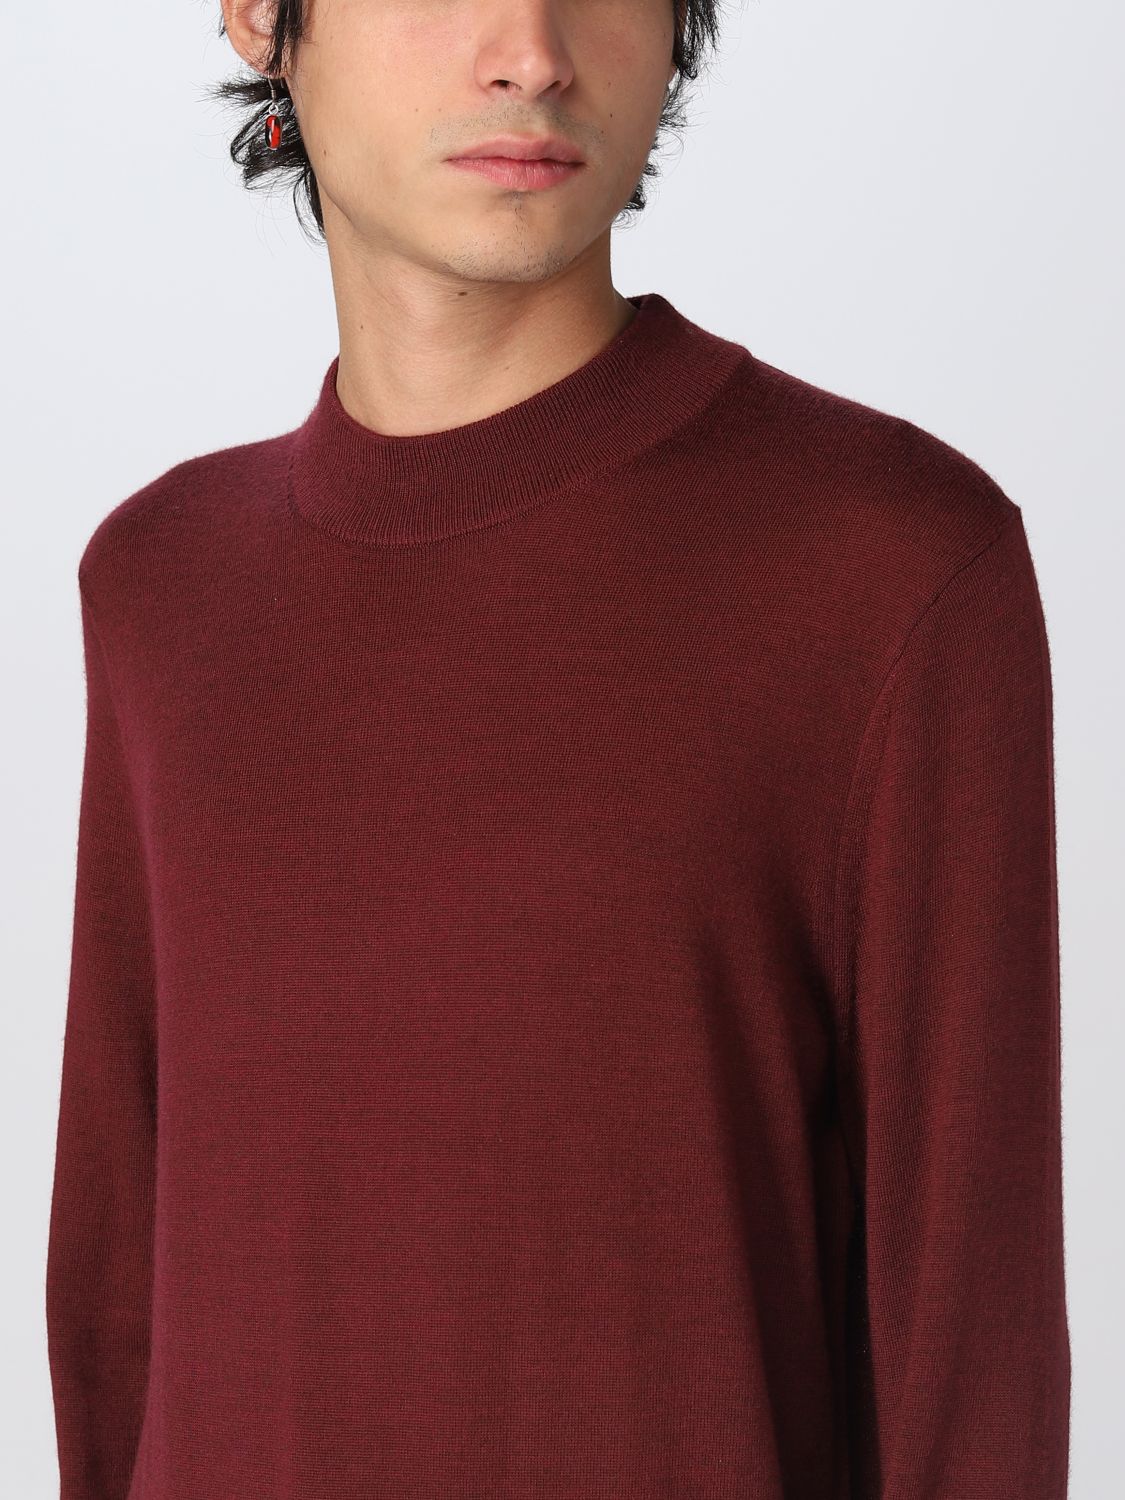 MICHAEL KORS: sweater for man - Wine | Michael Kors sweater CF2604G2DG  online on 